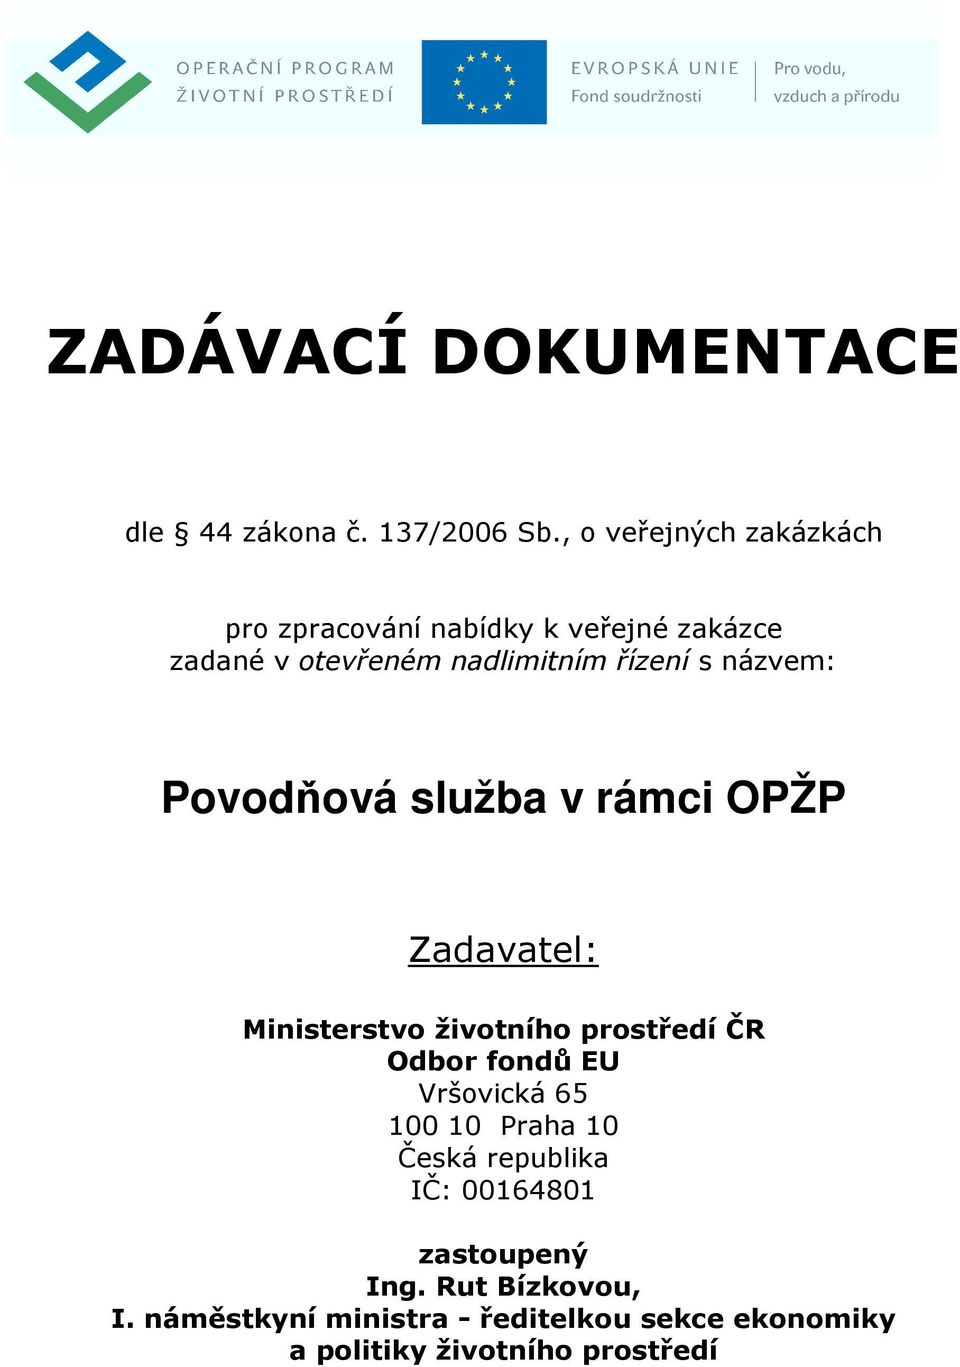 názvem: Povodňová služba v rámci OPŽP Zadavatel: Ministerstvo životního prostředí ČR Odbor fondů EU